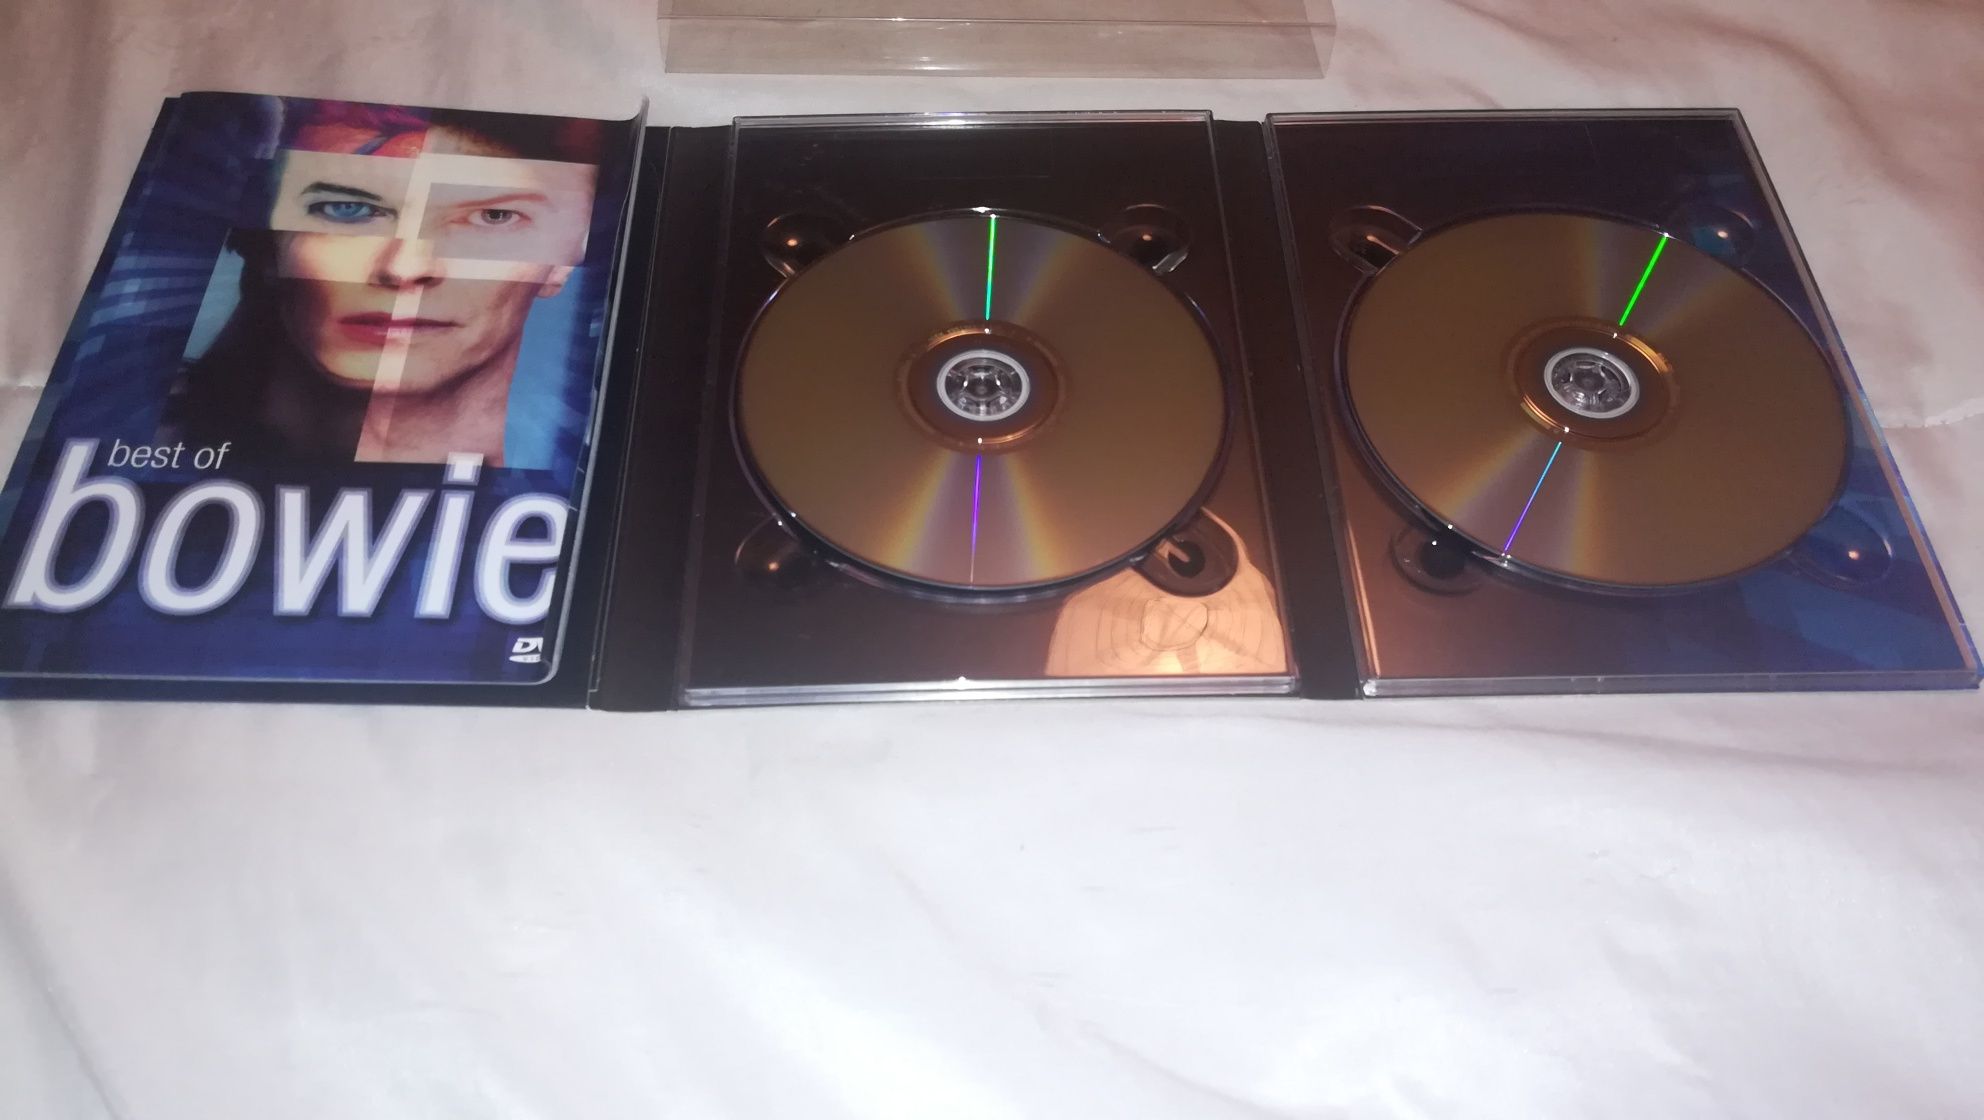 DVD Duplo David Bowie "Best of Bowie" (COMO NOVO)